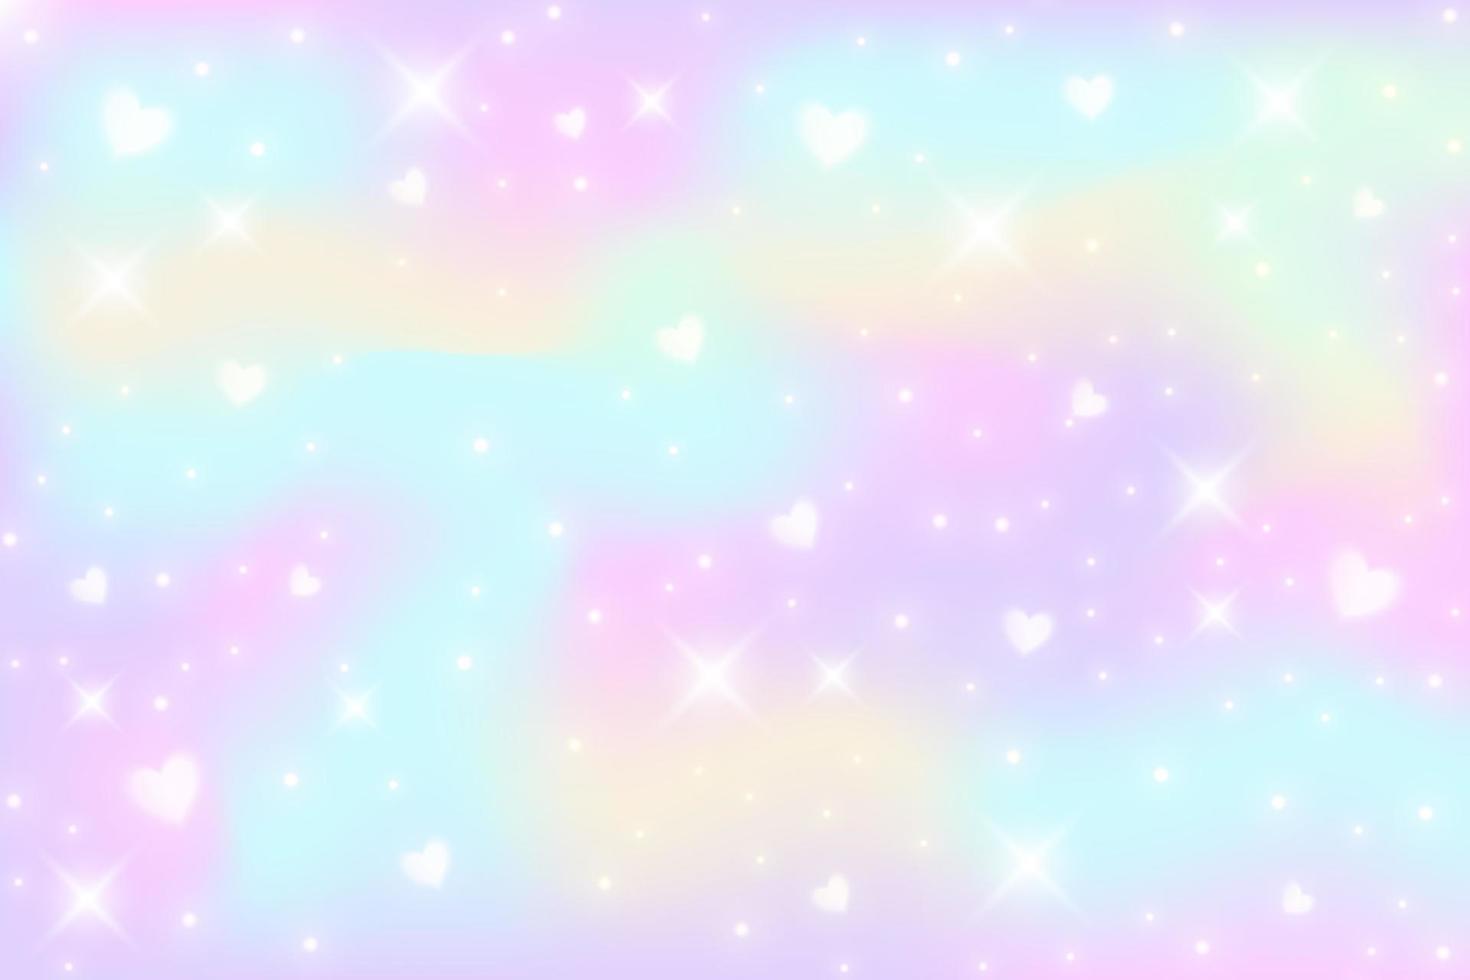 sfondo fantasia arcobaleno. illustrazione olografica in colori pastello. cielo multicolore con stelle e cuori. vettore